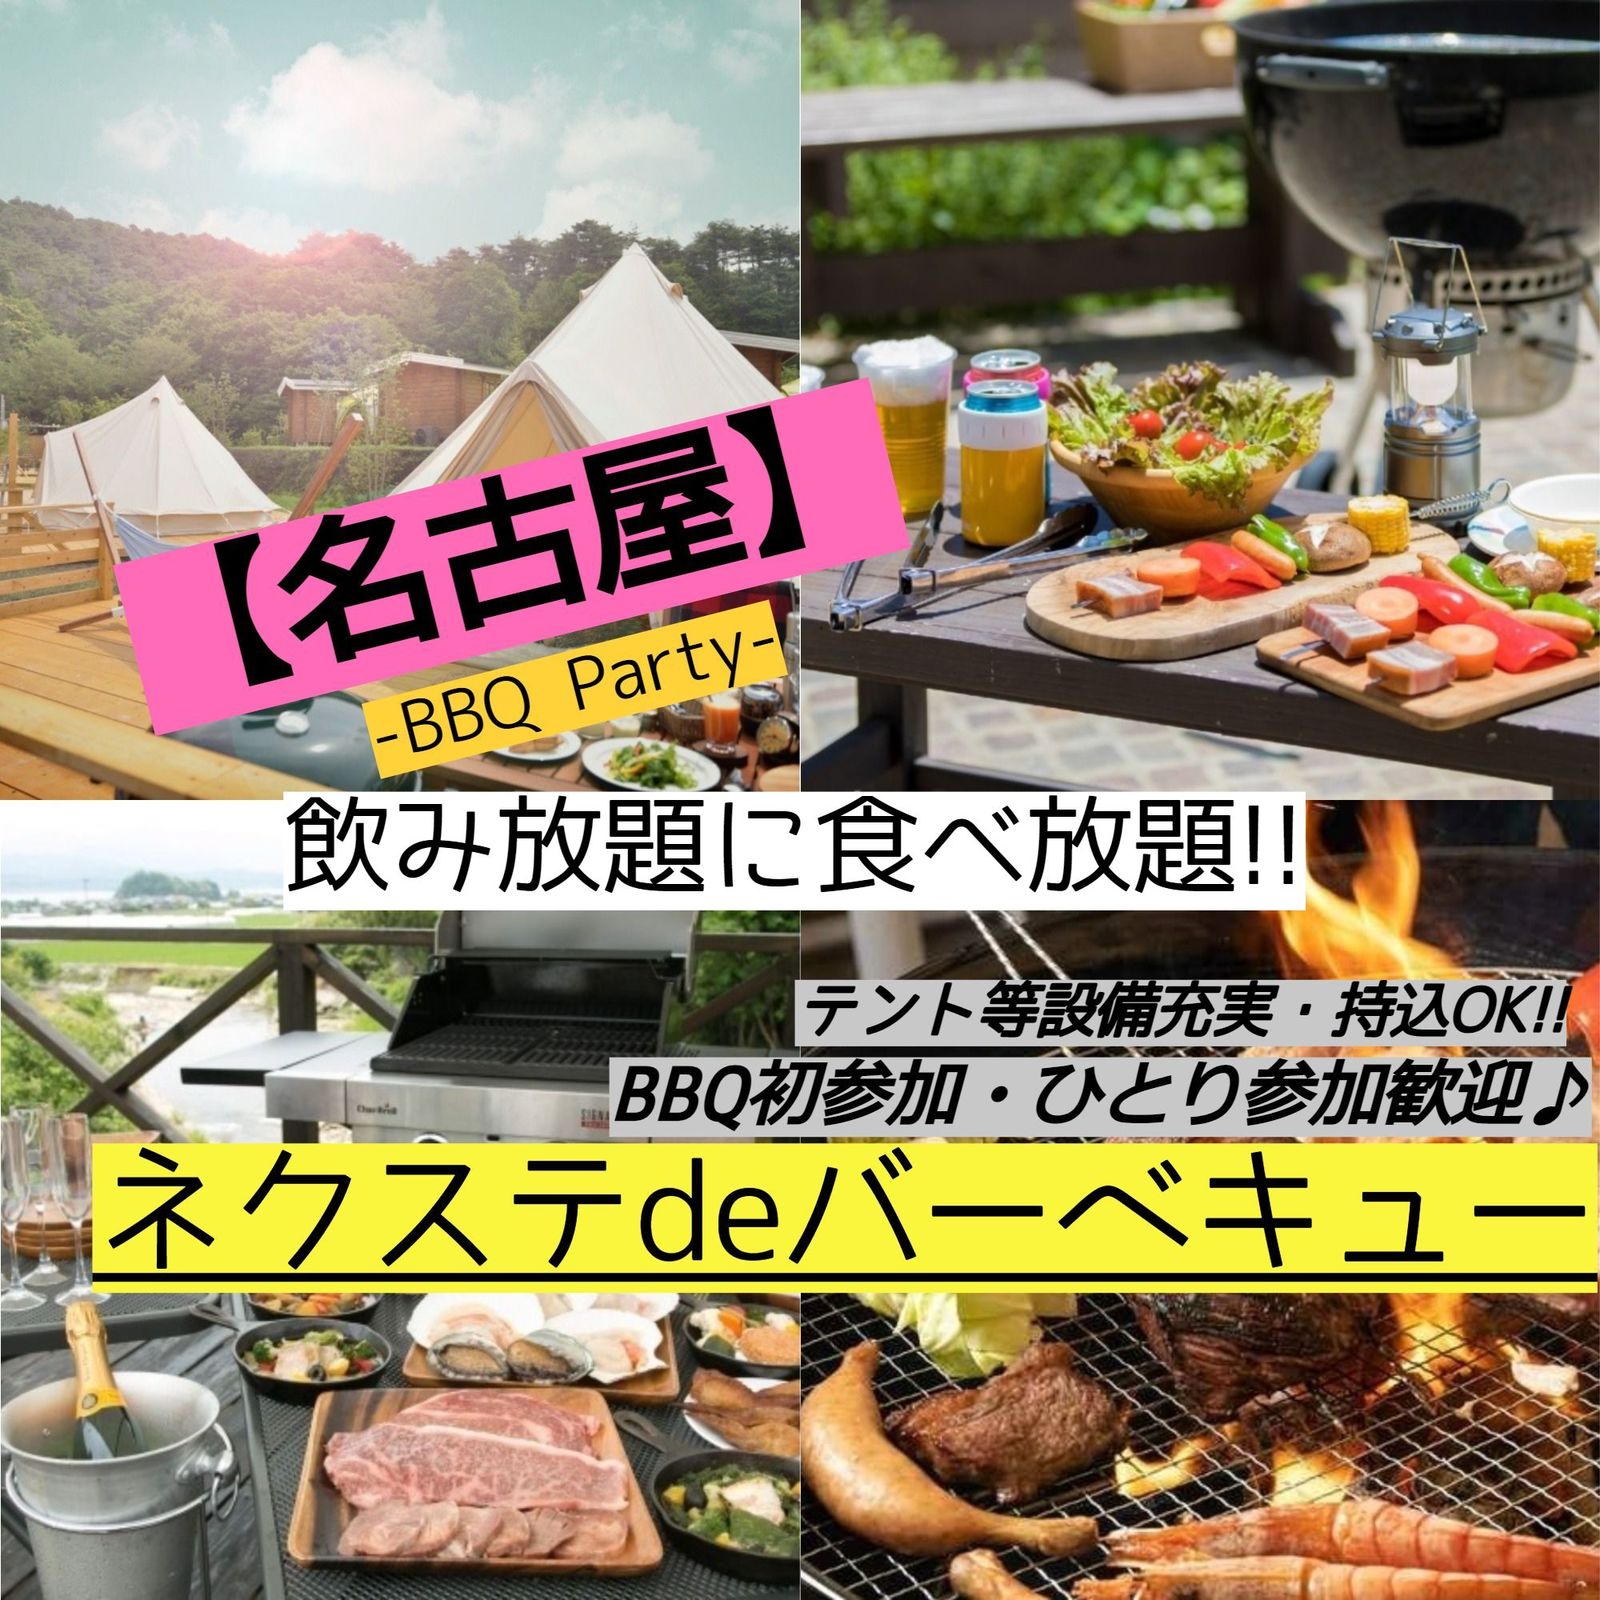 7月17日(祝日)【毎月2回開催・名古屋市内・BBQ】飲み・食べ放題!!素敵に本格的なBBQ♪【ネクステdeバーベキュー会】